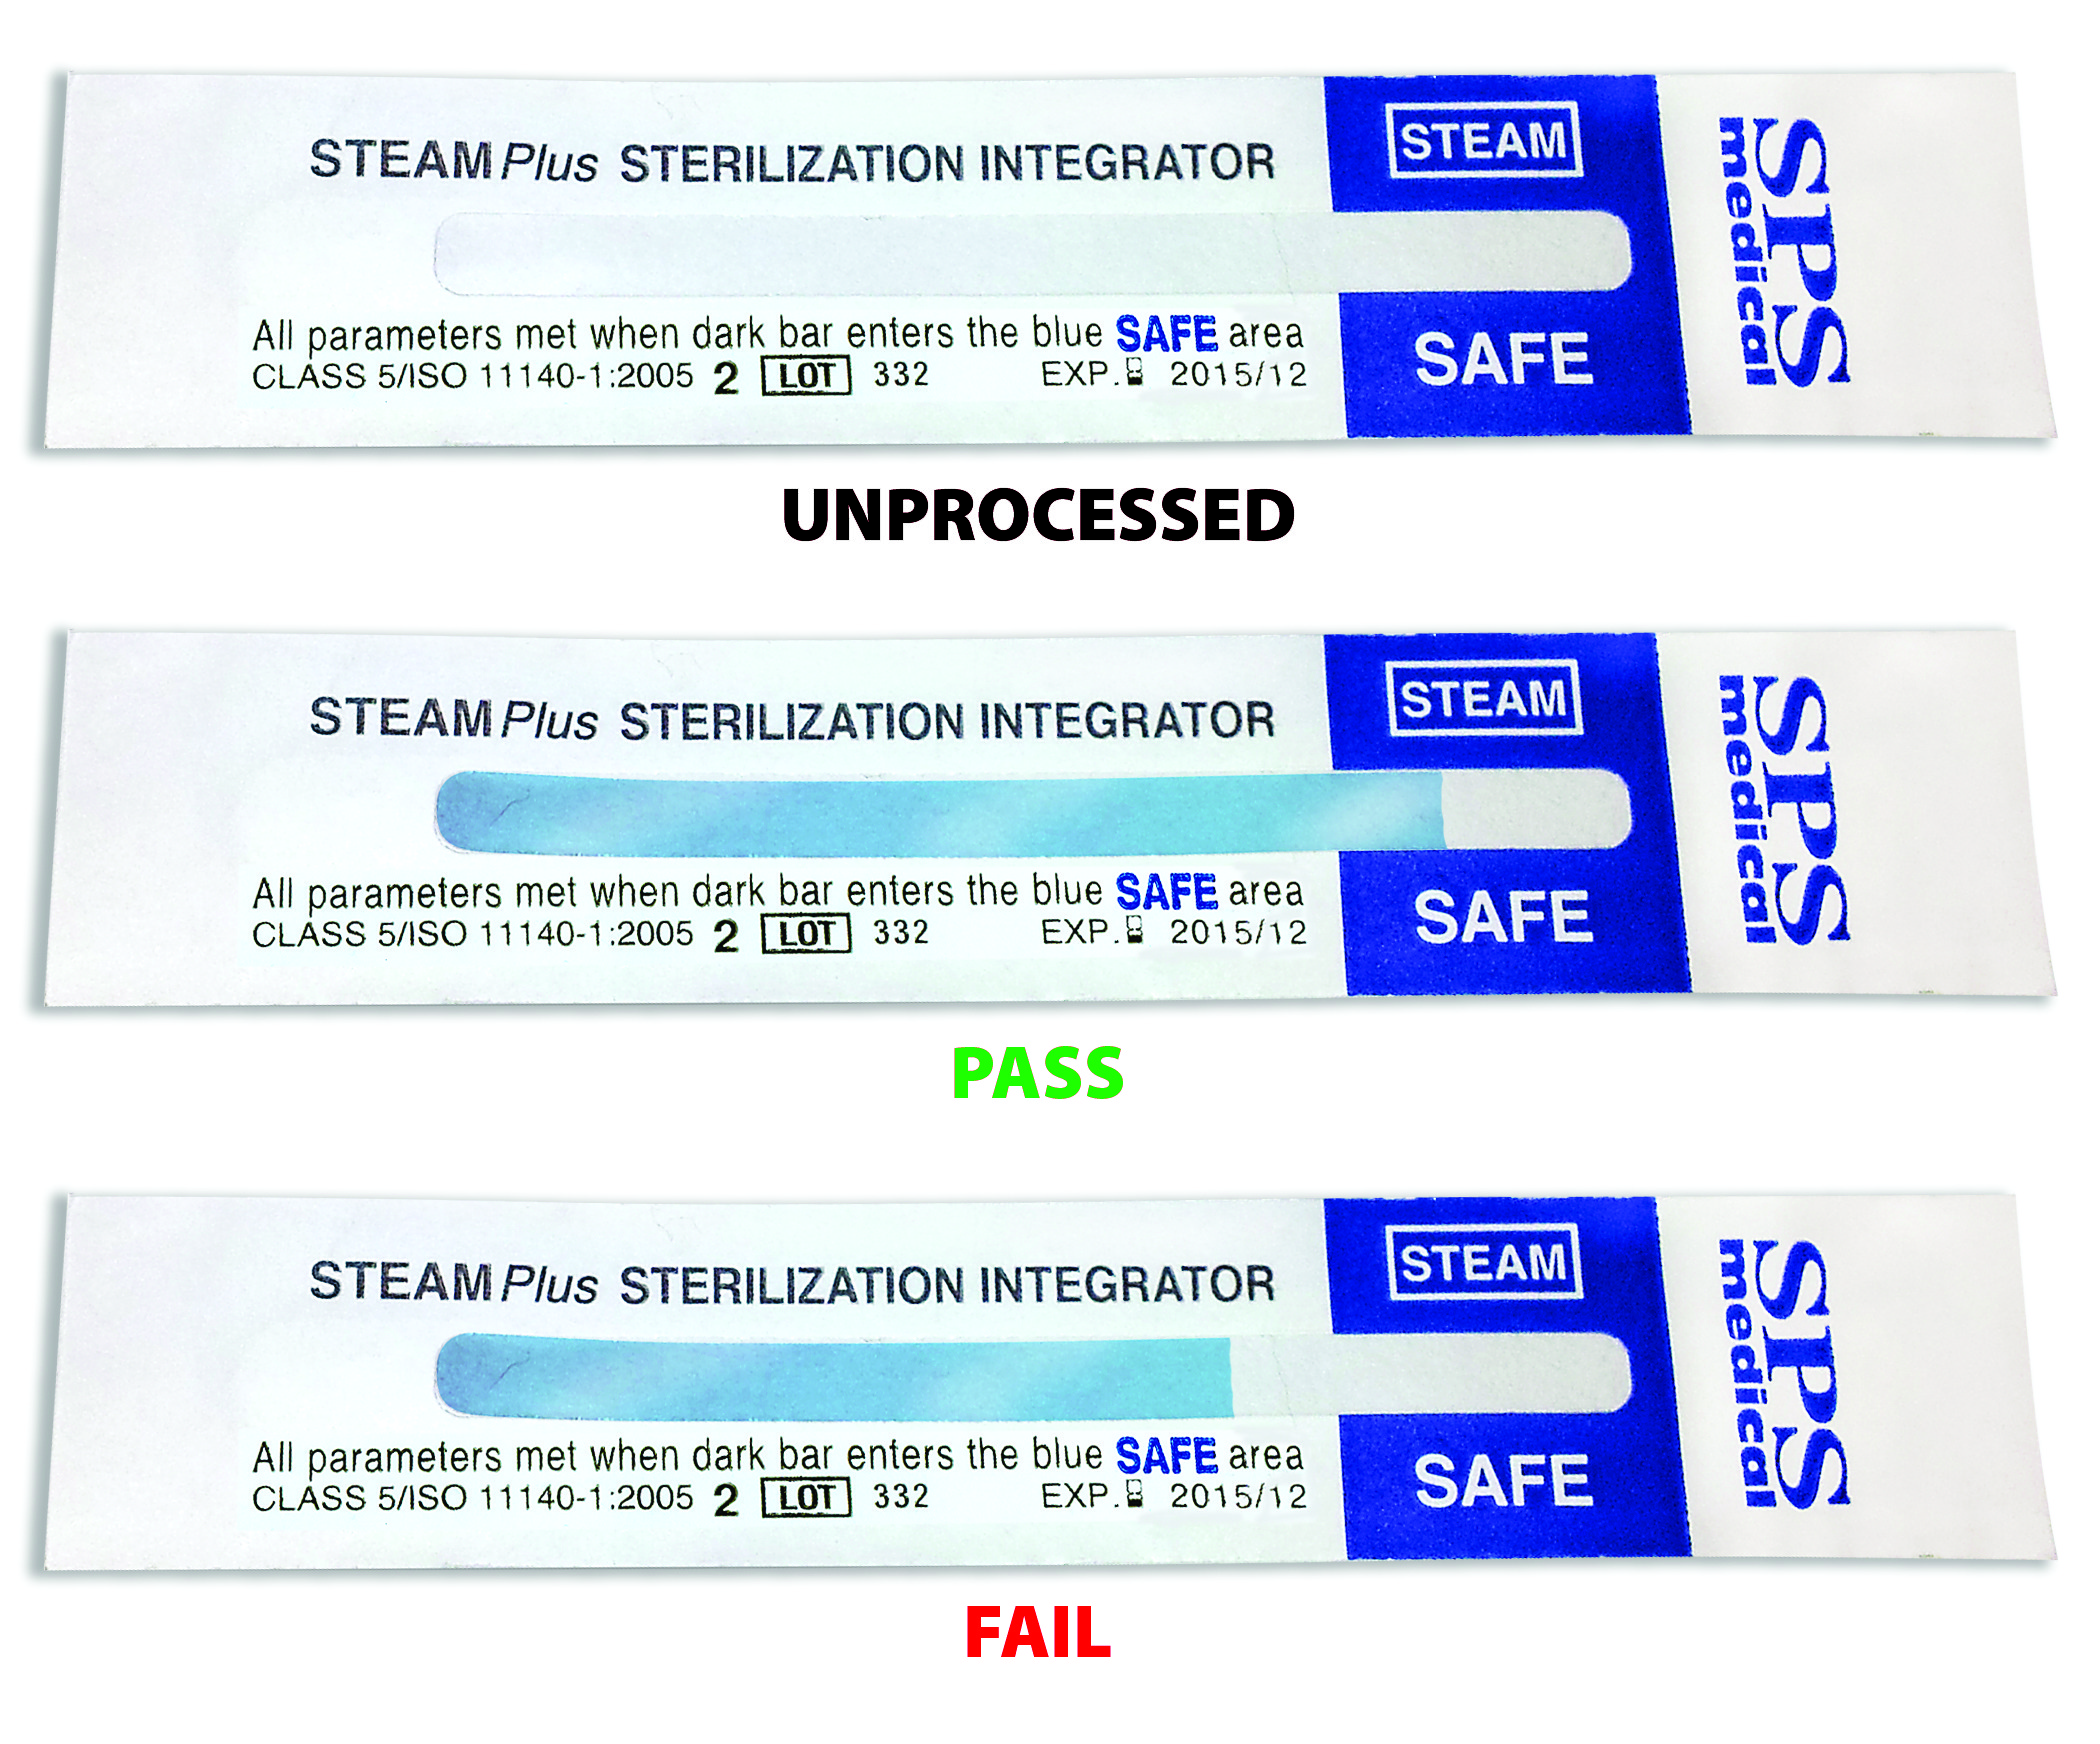 STEAMPlus Type 5 Integrators Statuses